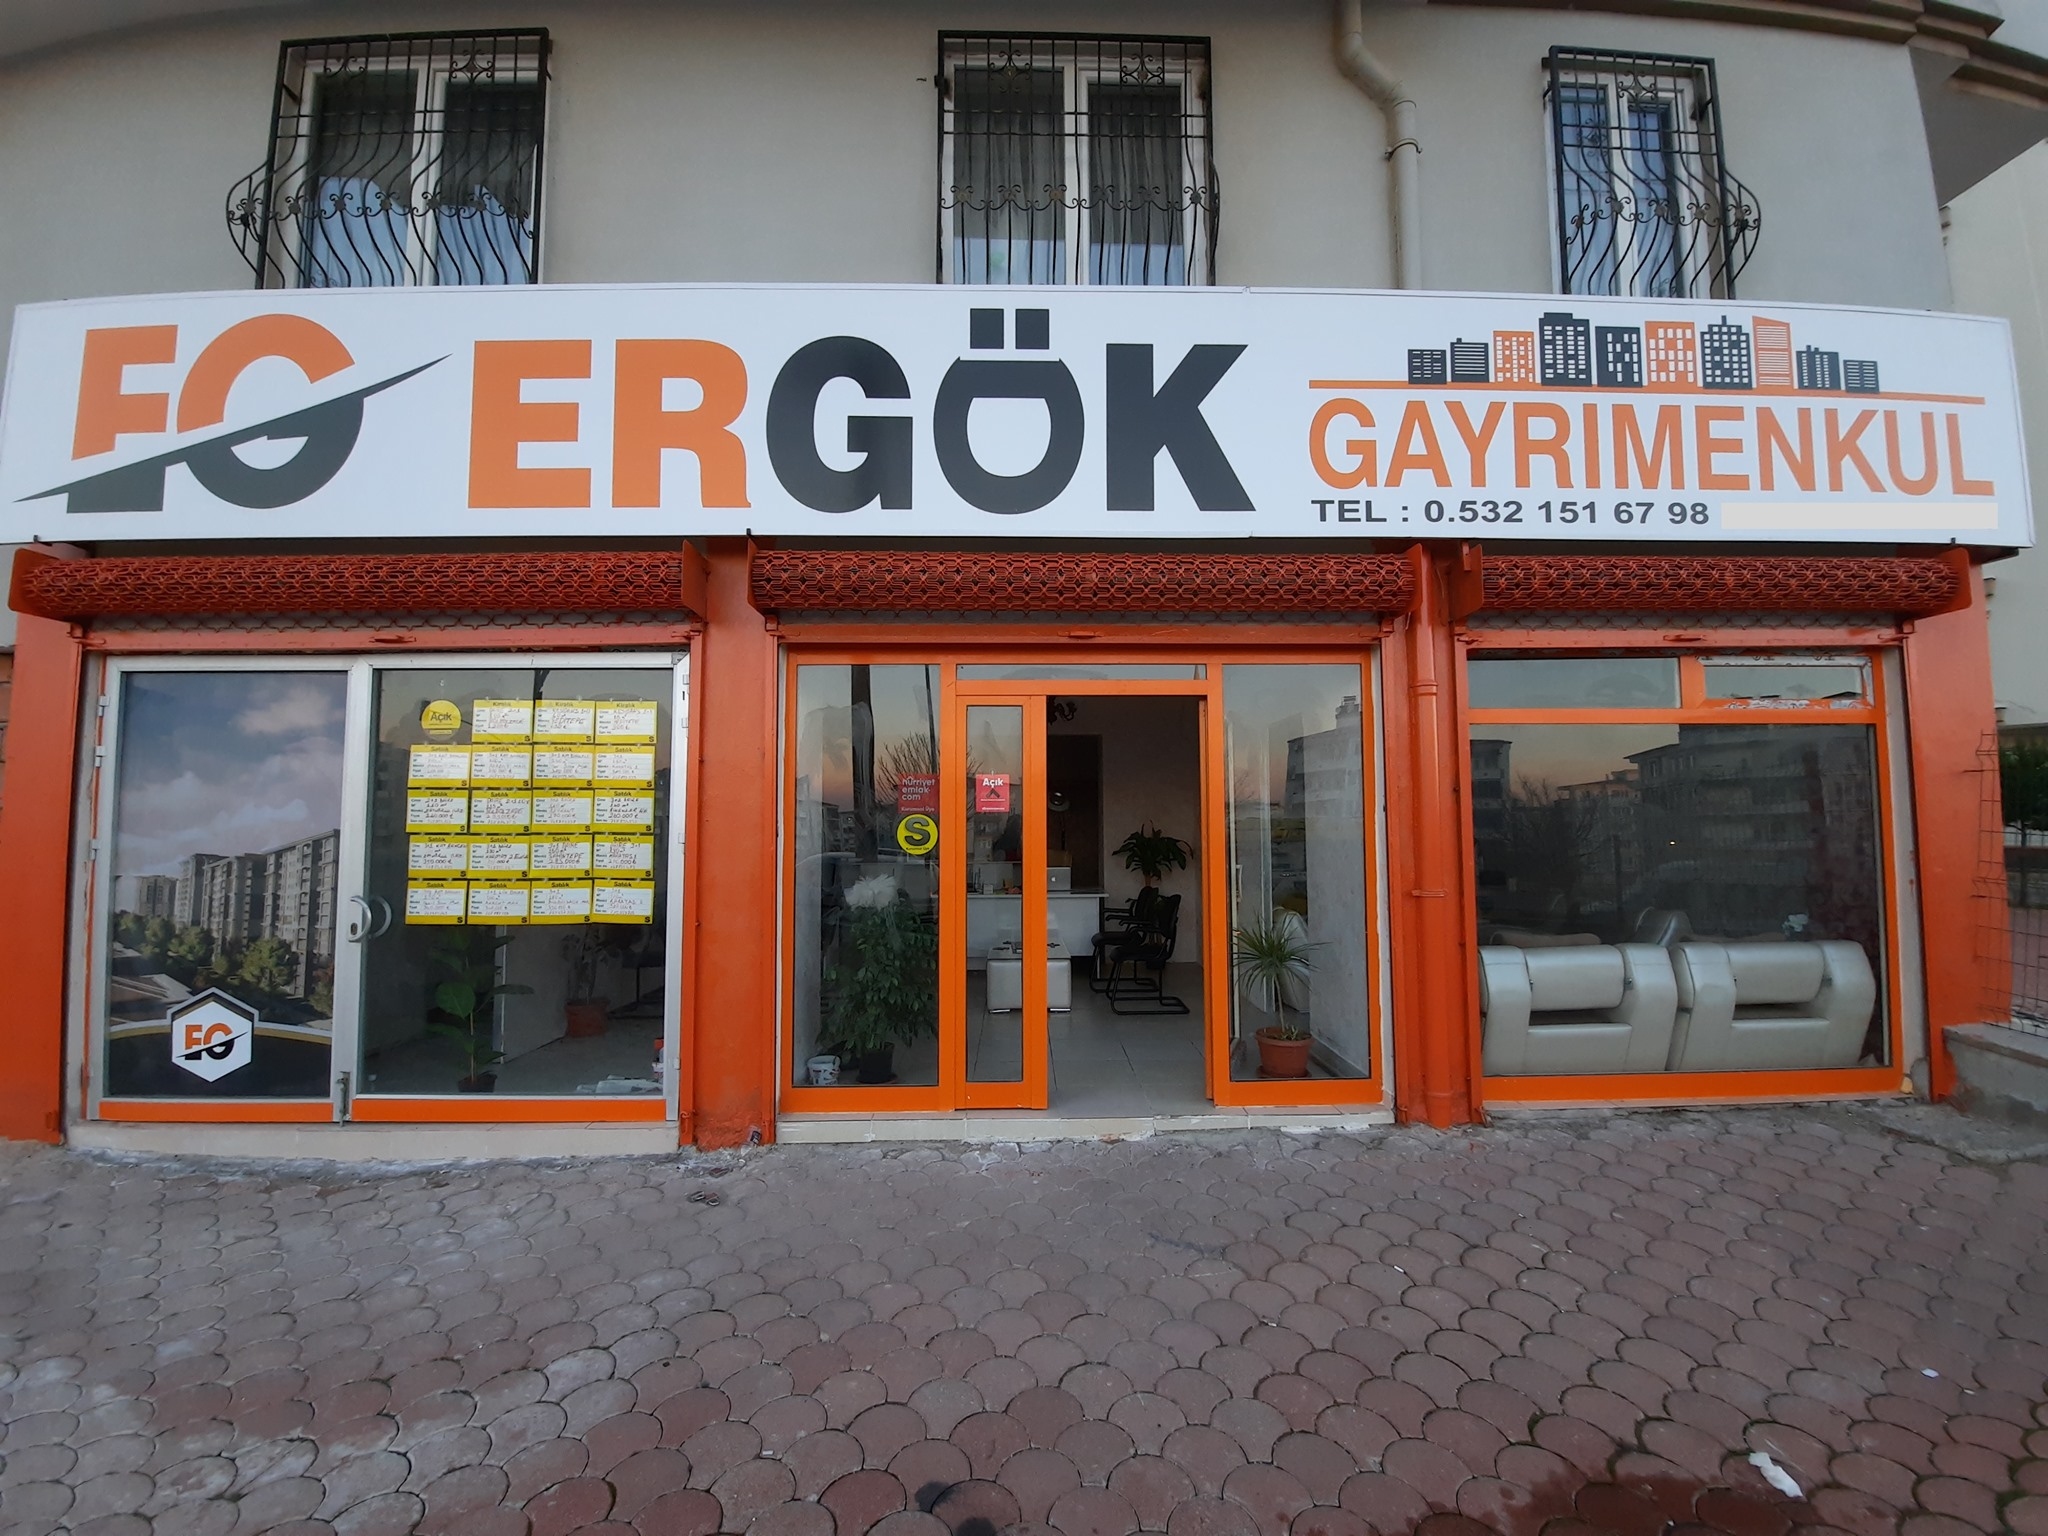 عقارات إرغوك ERGÖK GAYRİMENKUL تعد من أبرز شركات العقارات في غازي عنتاب